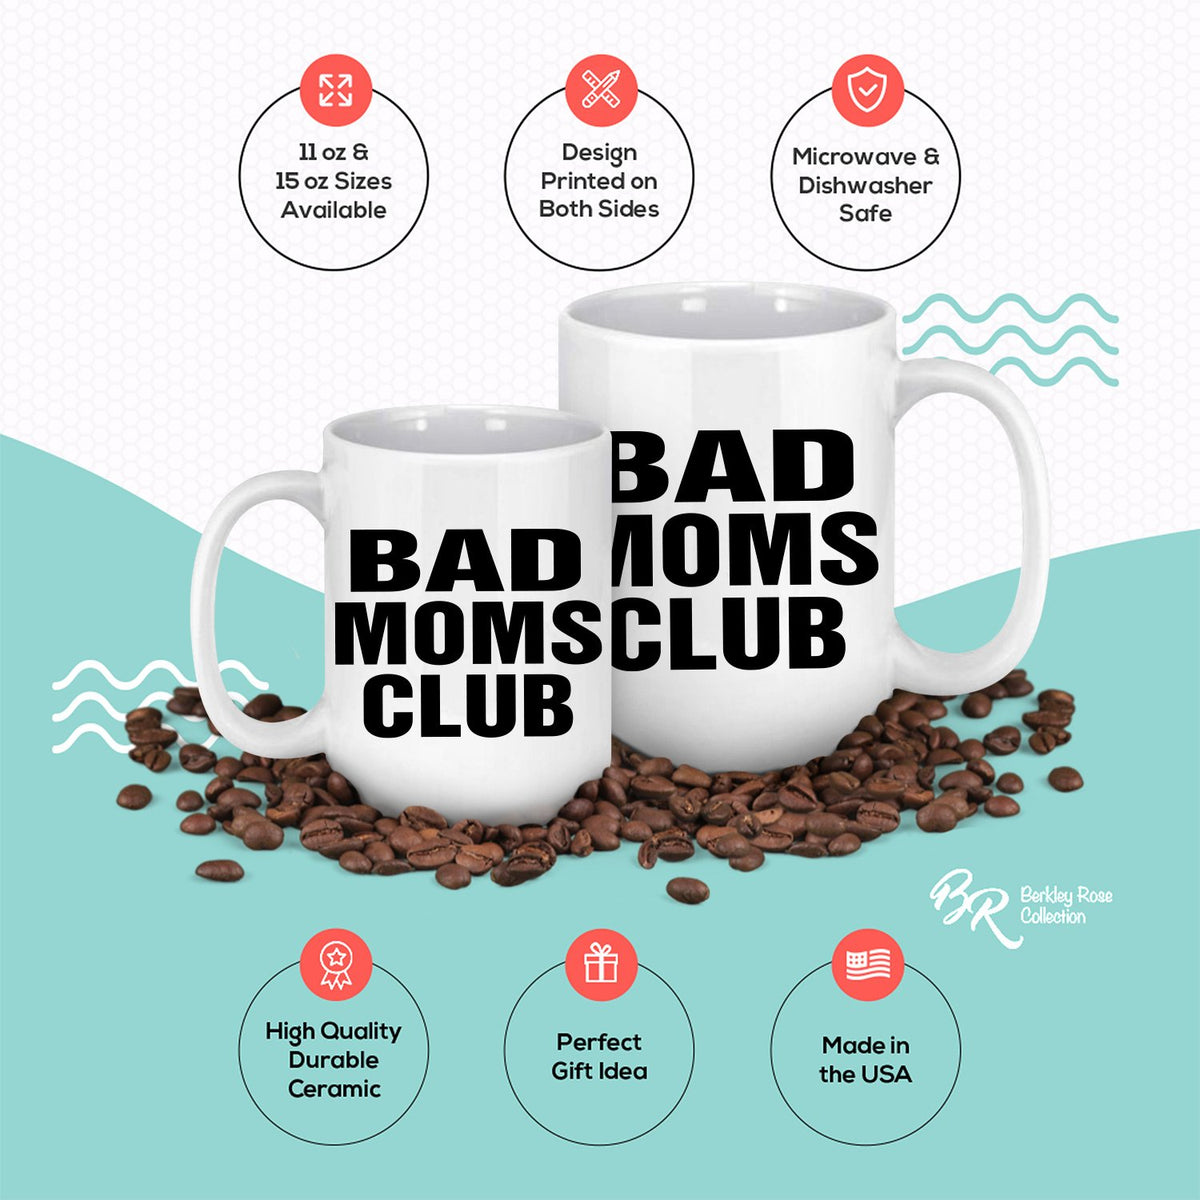 Bad Moms Club - Ceramic Coffee Mug